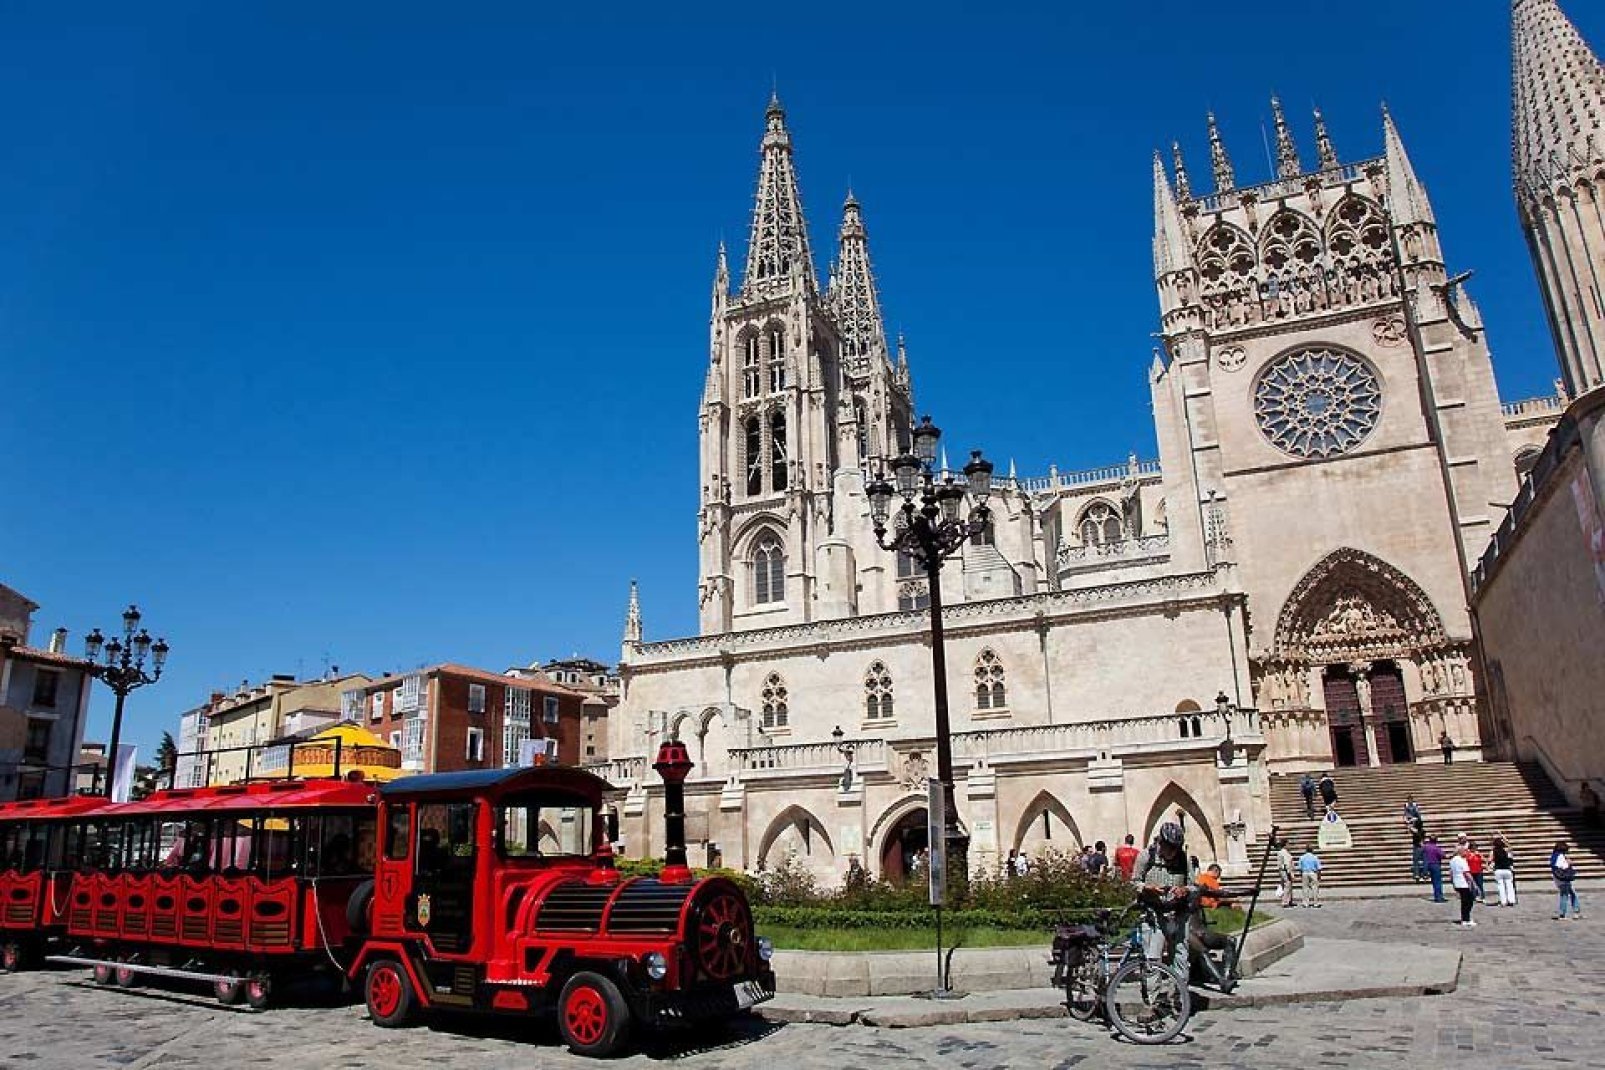 La catedral es la principal atracción turística de Burgos